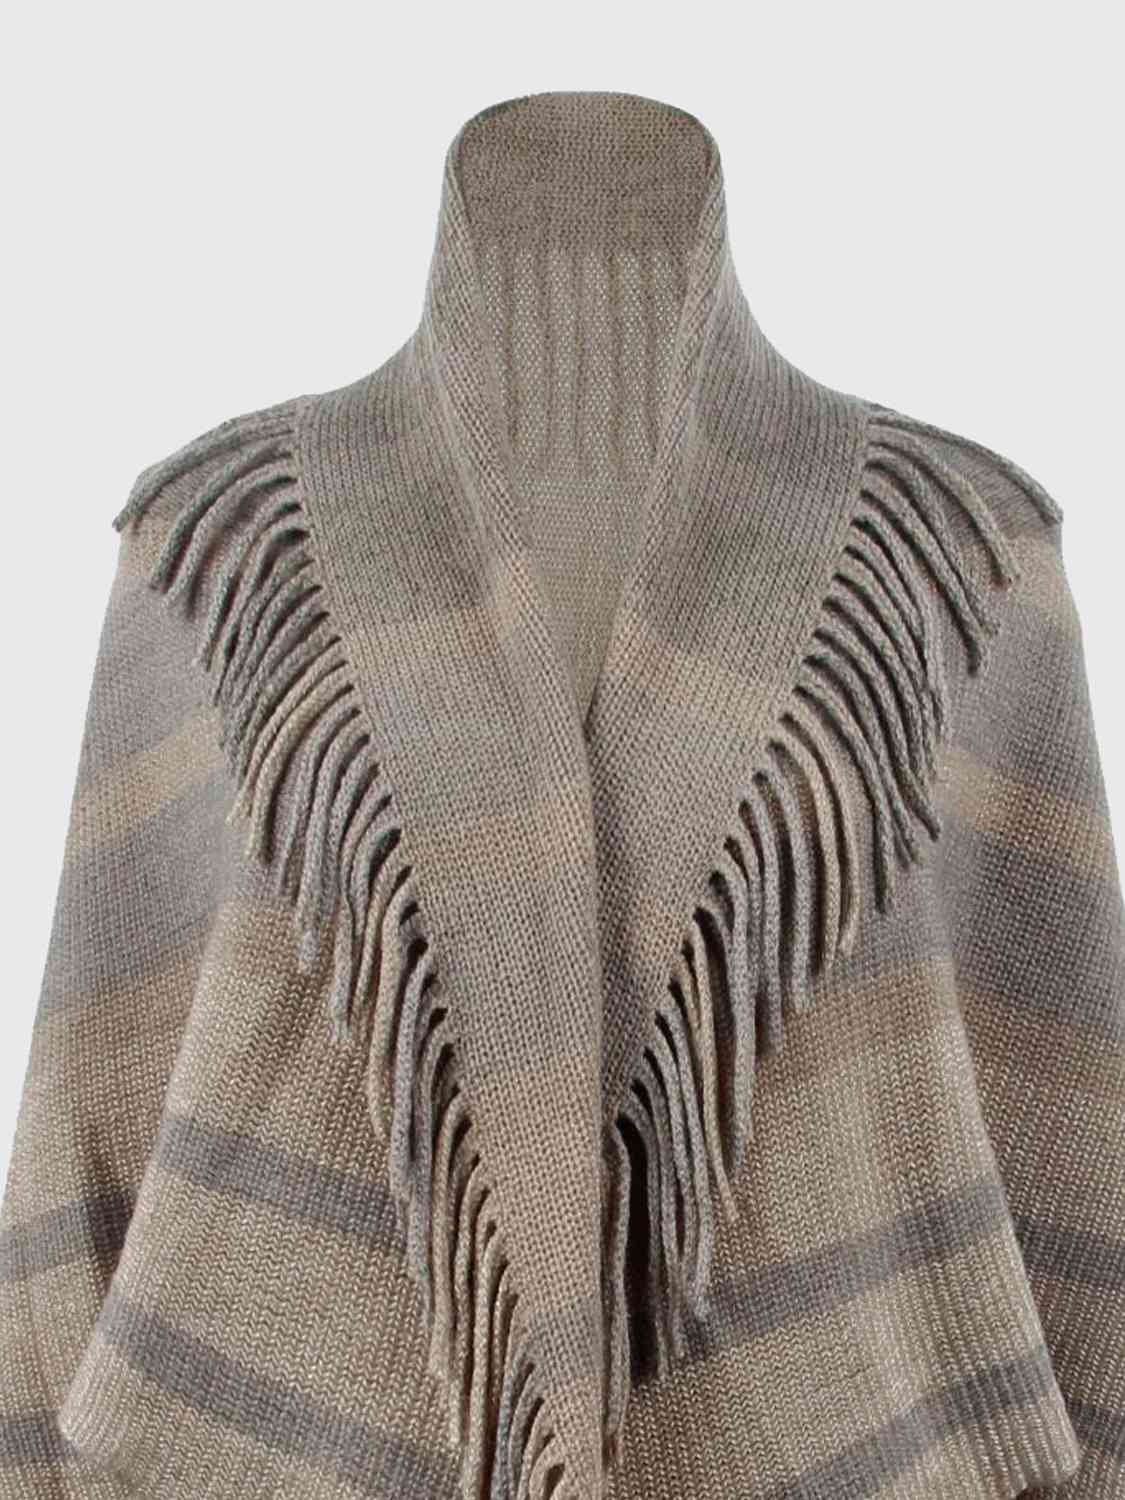 TEEK - Fringe Detail Open Front Sweater SWEATER TEEK Trend   